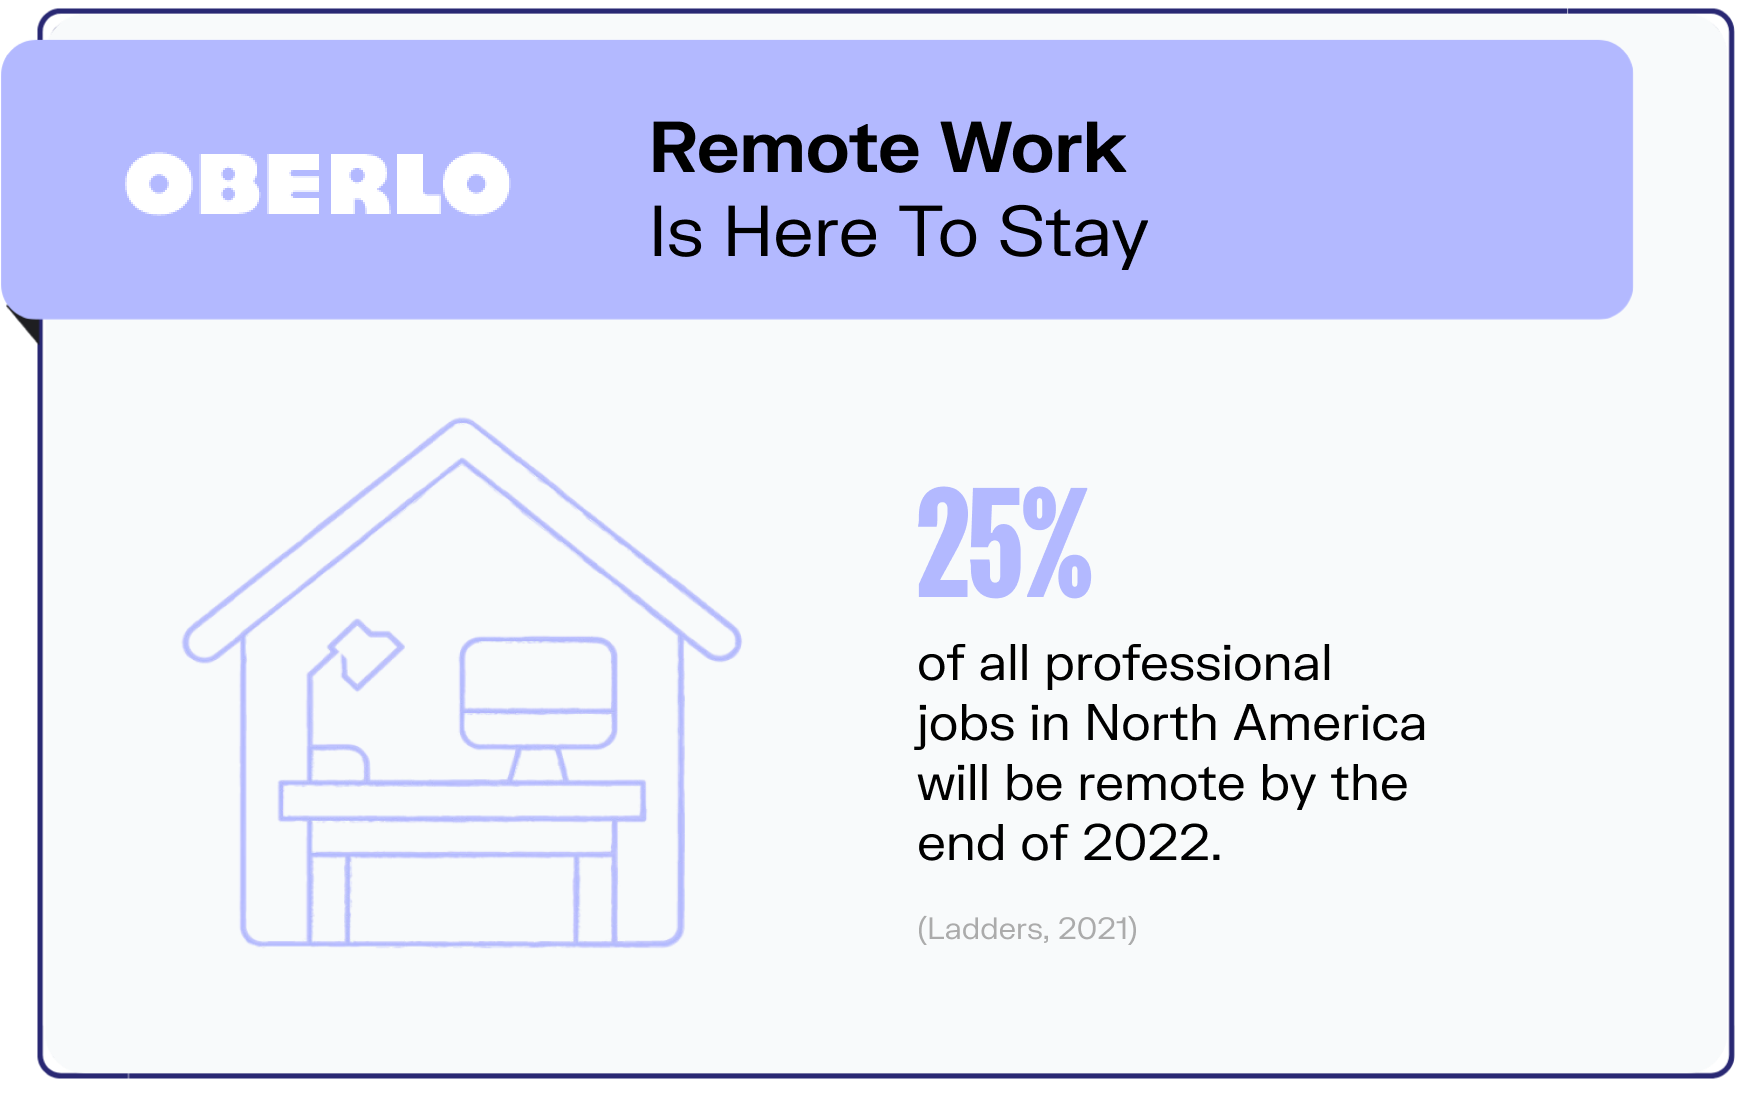 remote work statistics graphic5